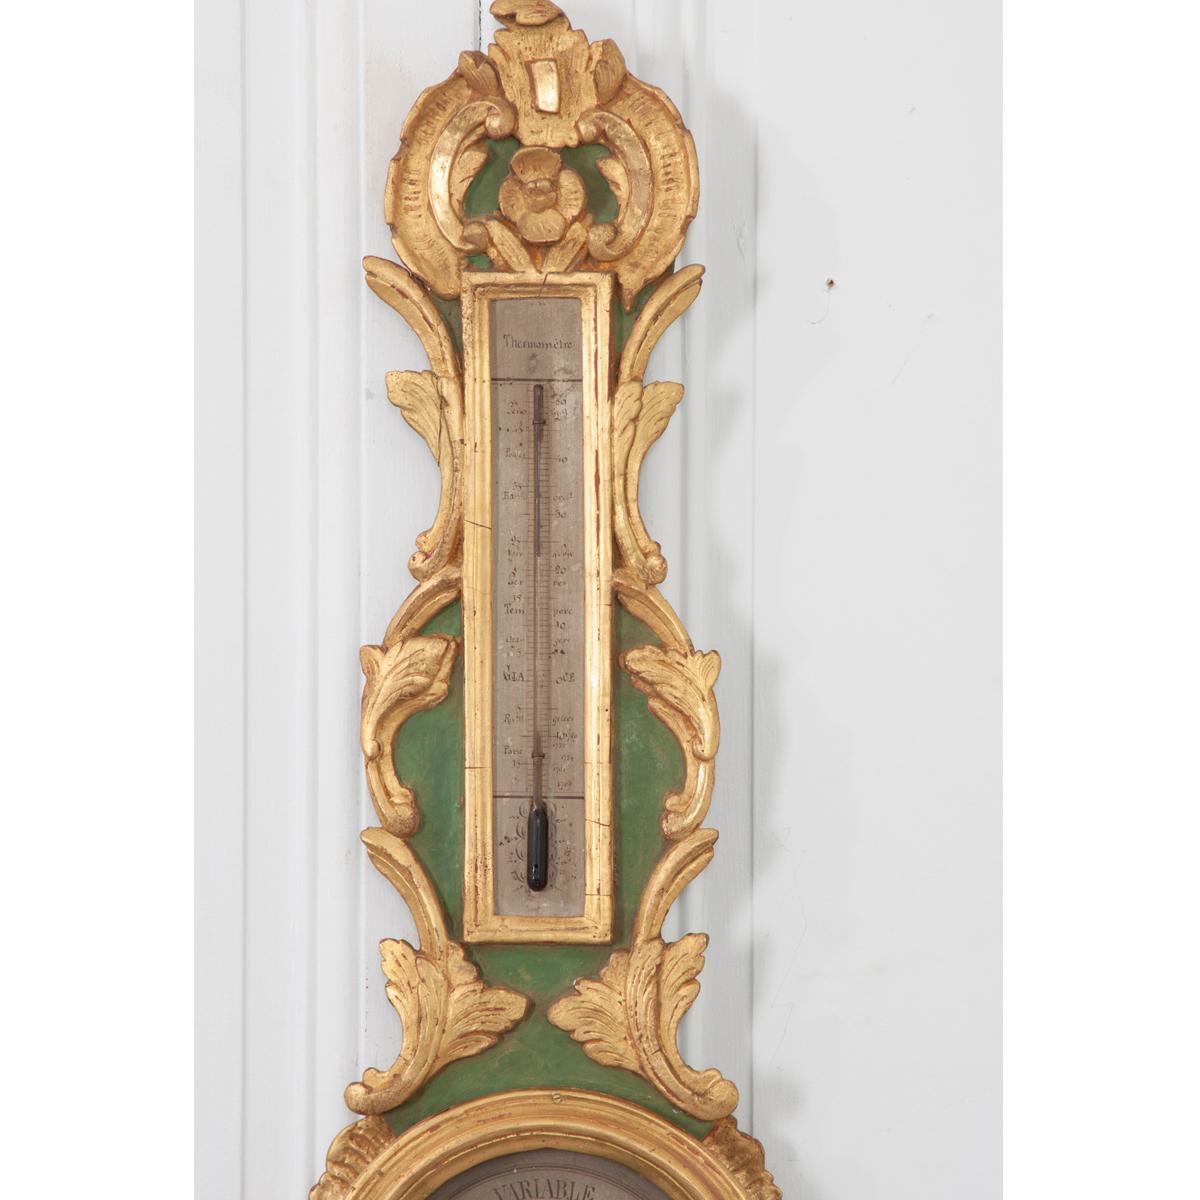 Baromètre et thermomètre français du 19ème siècle peint et doré. Il s'agit d'un instrument scientifique en forme de 